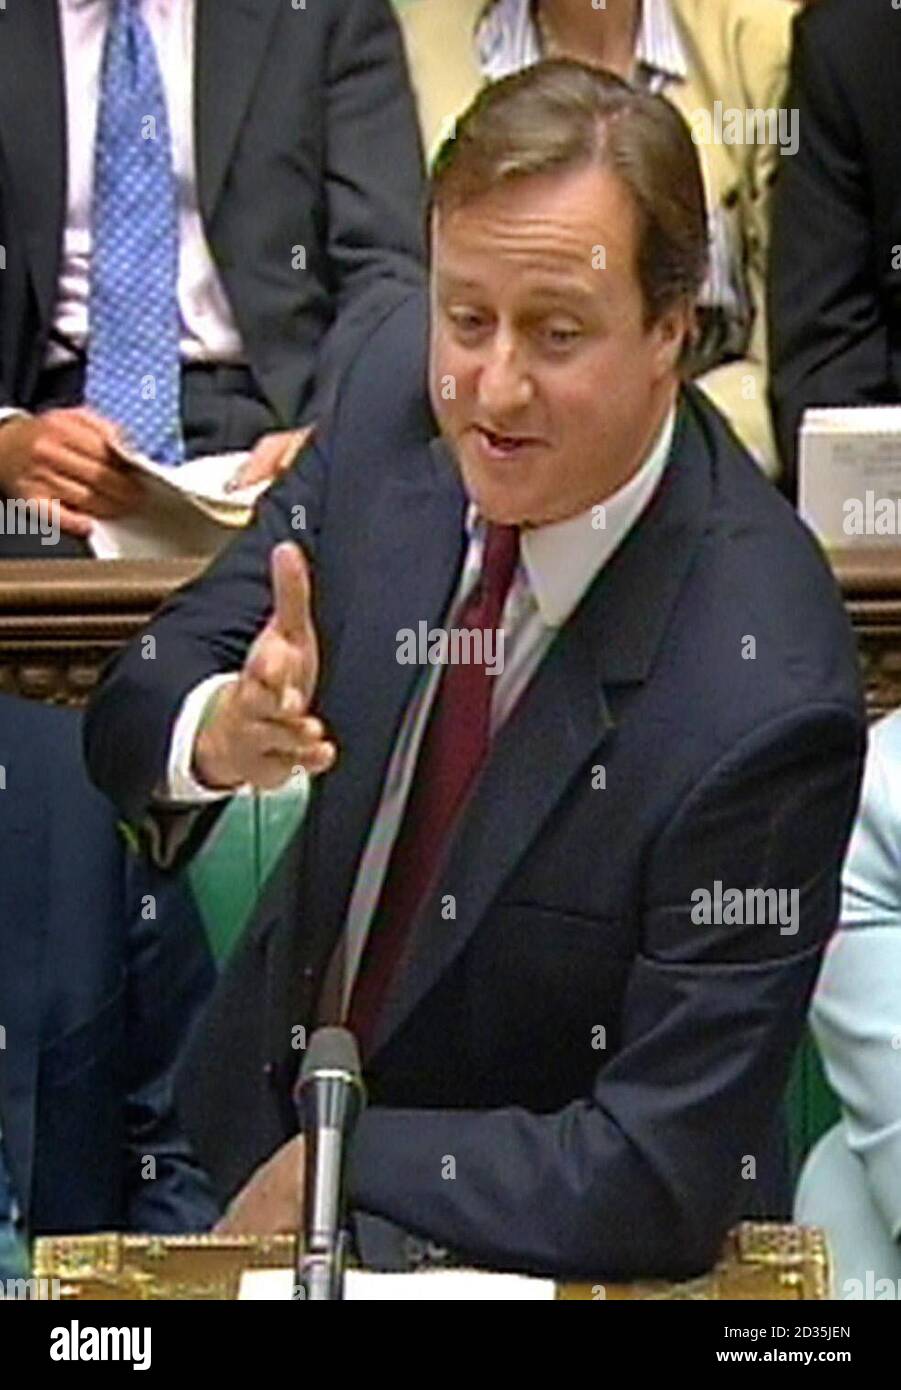 Le chef conservateur David Cameron parle lors des questions du premier ministre à la Chambre des communes, à Londres. Banque D'Images